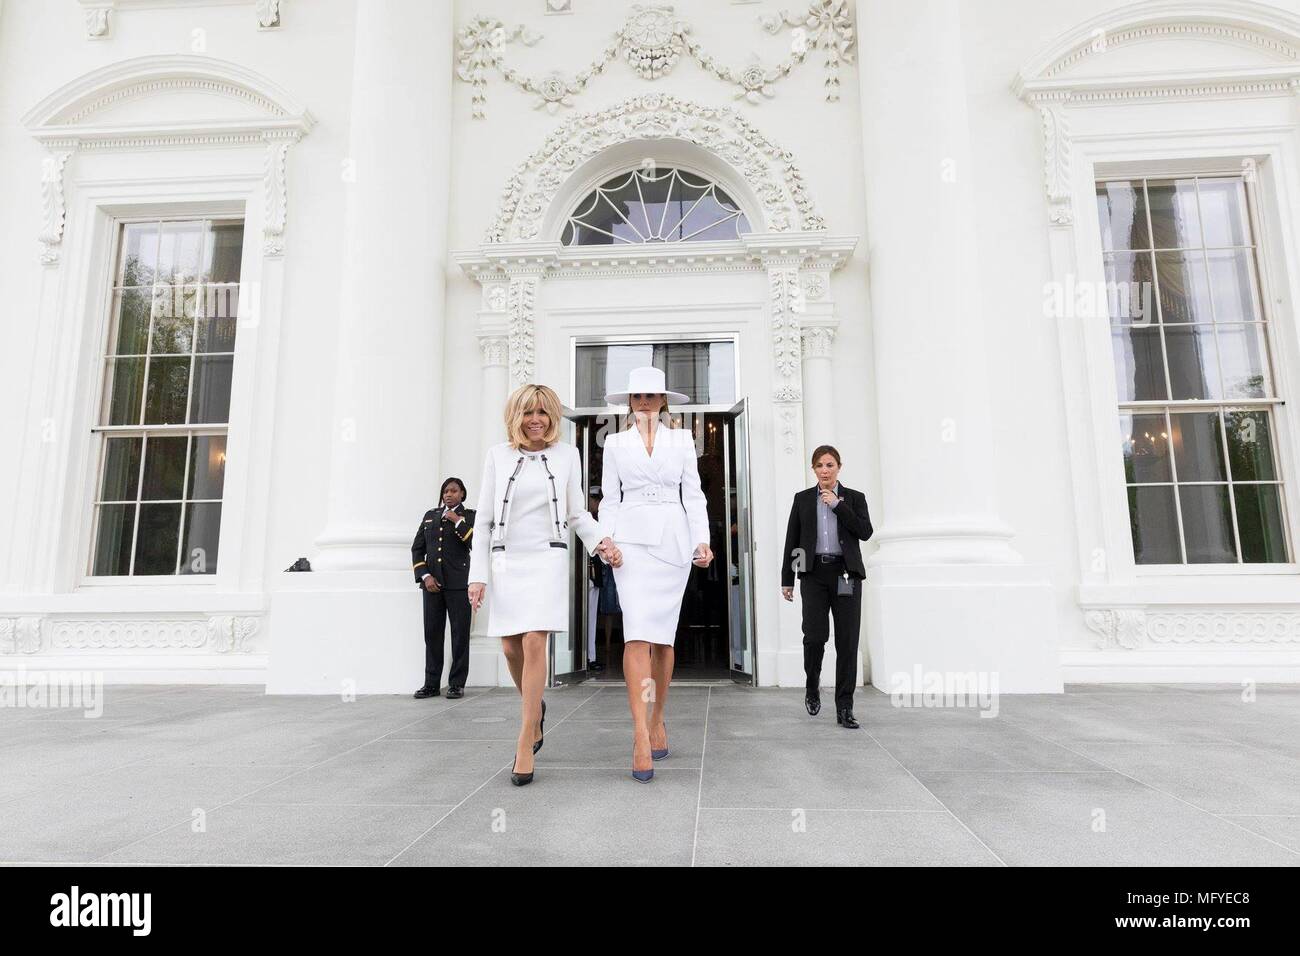 Première Dame des États-Unis Melania Trump marche main dans la main avec Brigitte Macron, épouse du Président français, Emmanuel macron sur la pelouse Sud de la visite d'État arrivée cérémonie à la Maison Blanche le 24 avril 2018 à Washington, DC. Banque D'Images